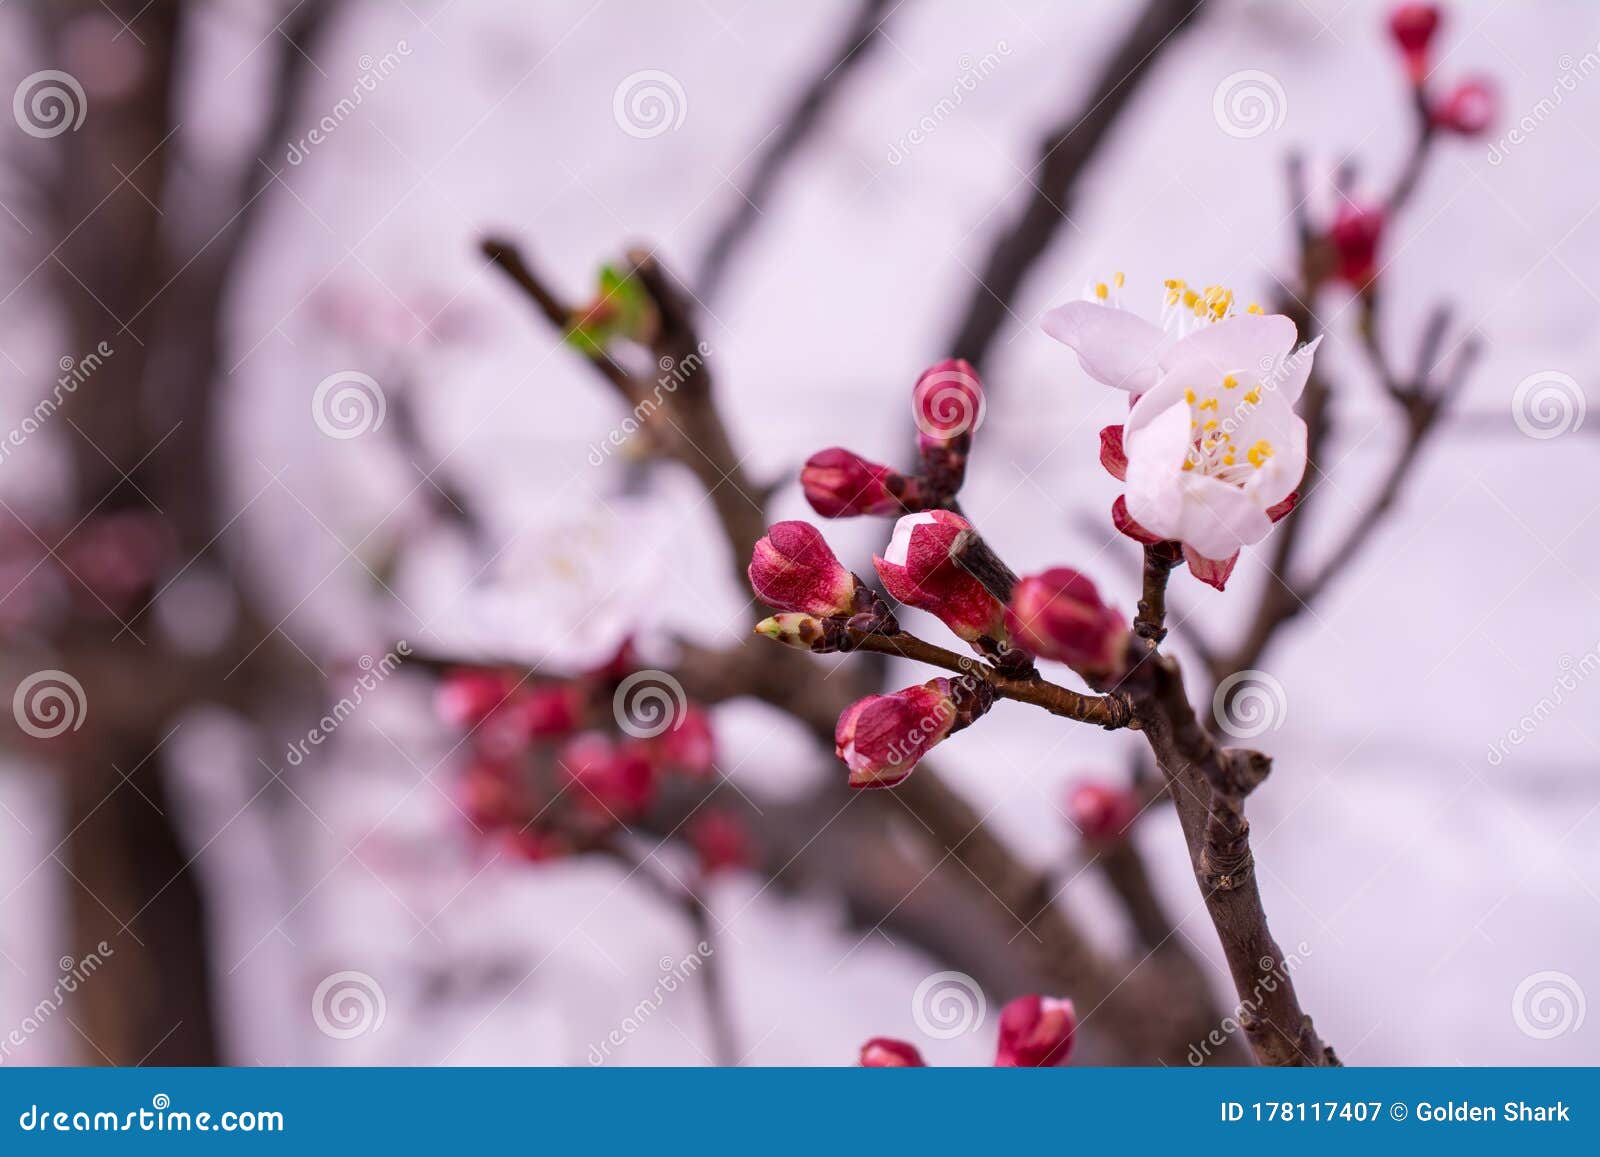 Bellas Flores De Primavera Rosadas En La Rama. árbol De Durazno Imagen de  archivo - Imagen de alimento, fresco: 178117407